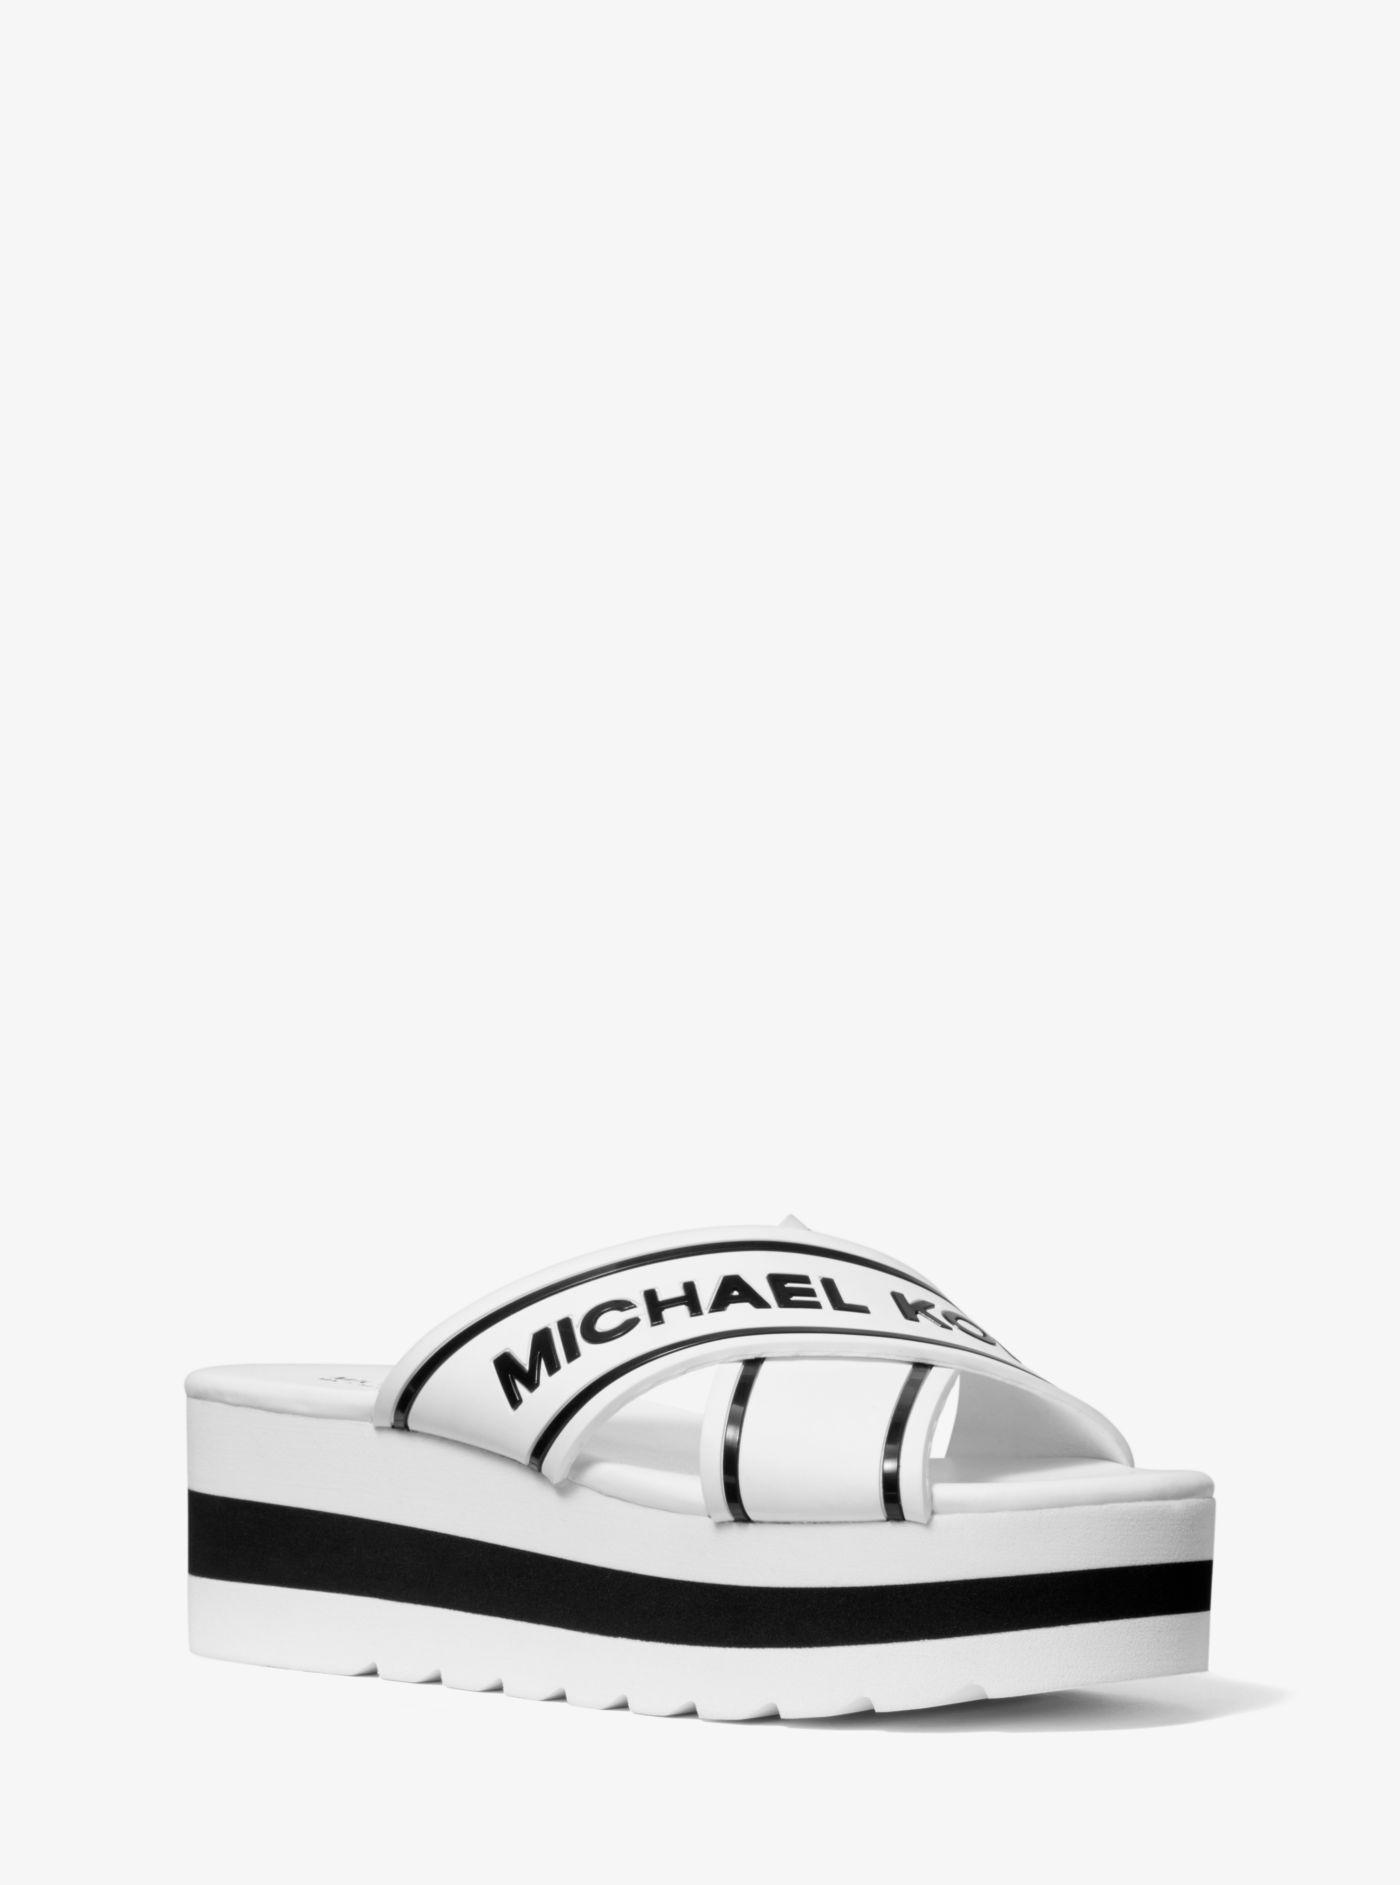 Michael Kors Rubber Demi Logo Tape Slide Sandal in White - Lyst